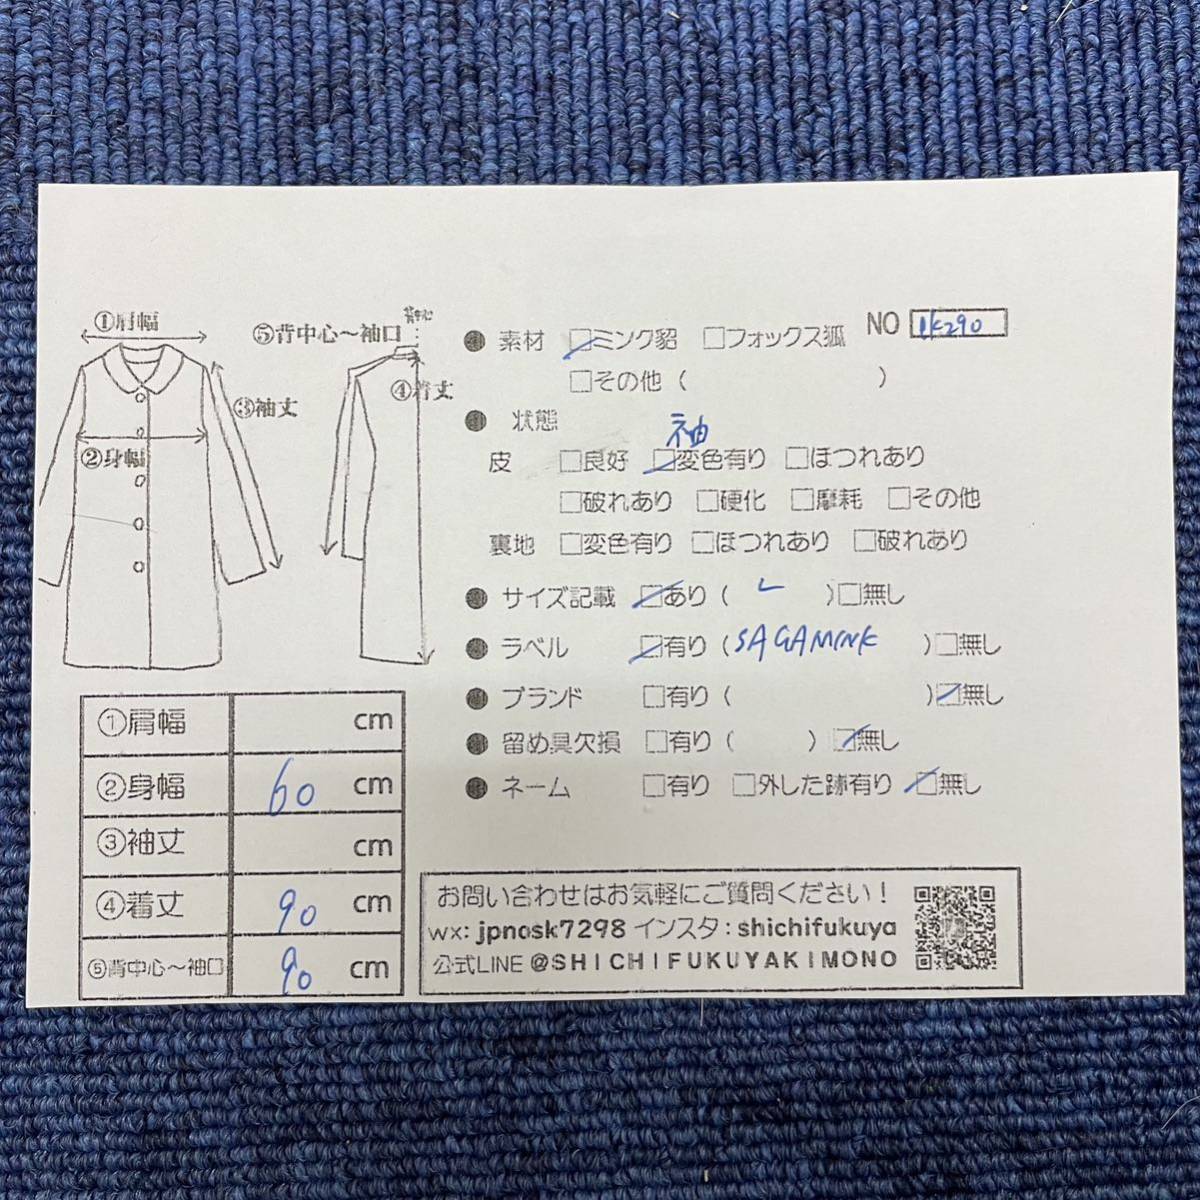 【七福】fk290 SAGAMINK 紳士 メンズコート セミロングコート デザインコート ミンクコート ブラックミンク 貂皮 mink身丈 約 90cm_画像10